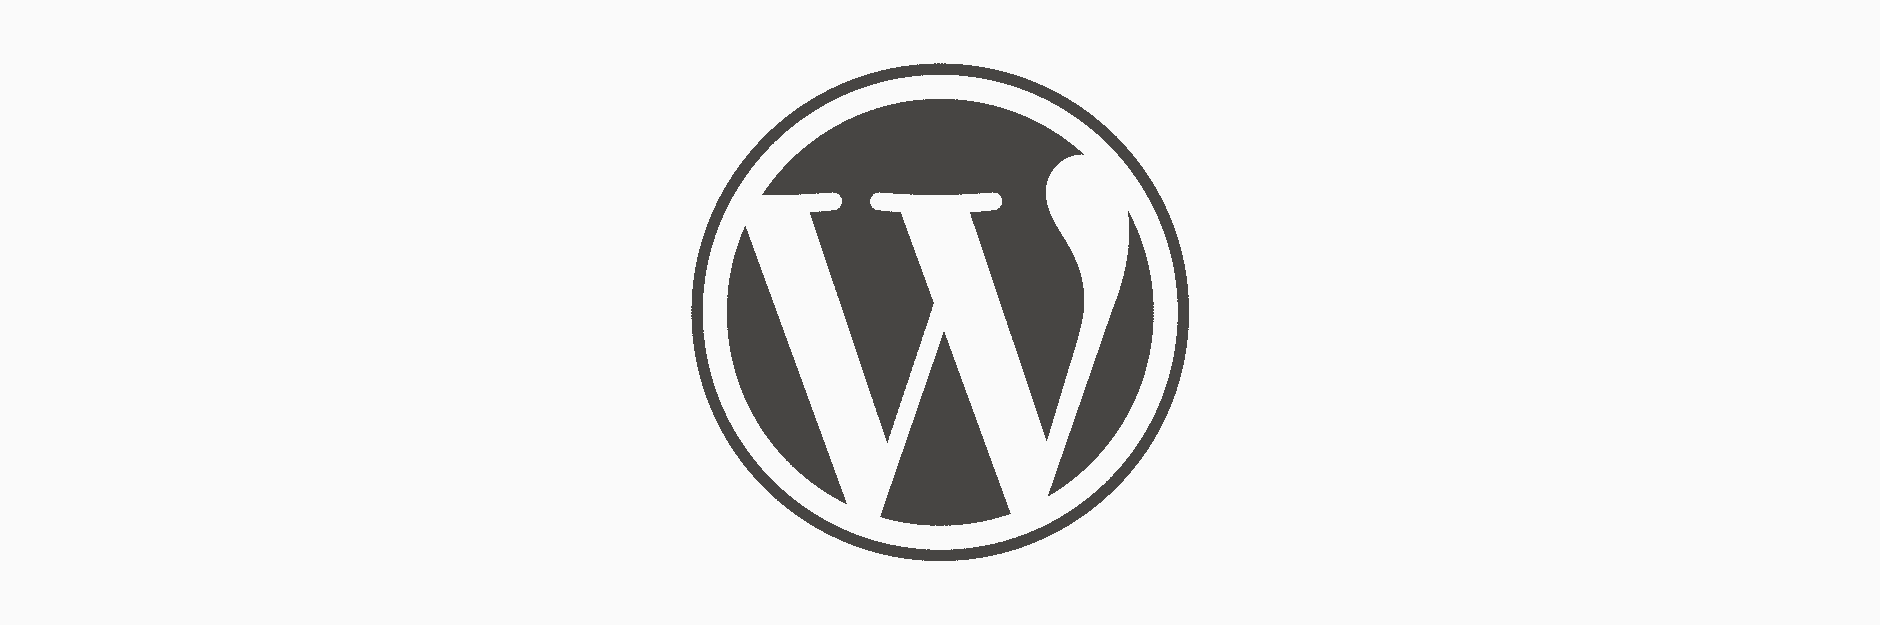 WordPressでサイトキーワードを設定する項目を作りたい